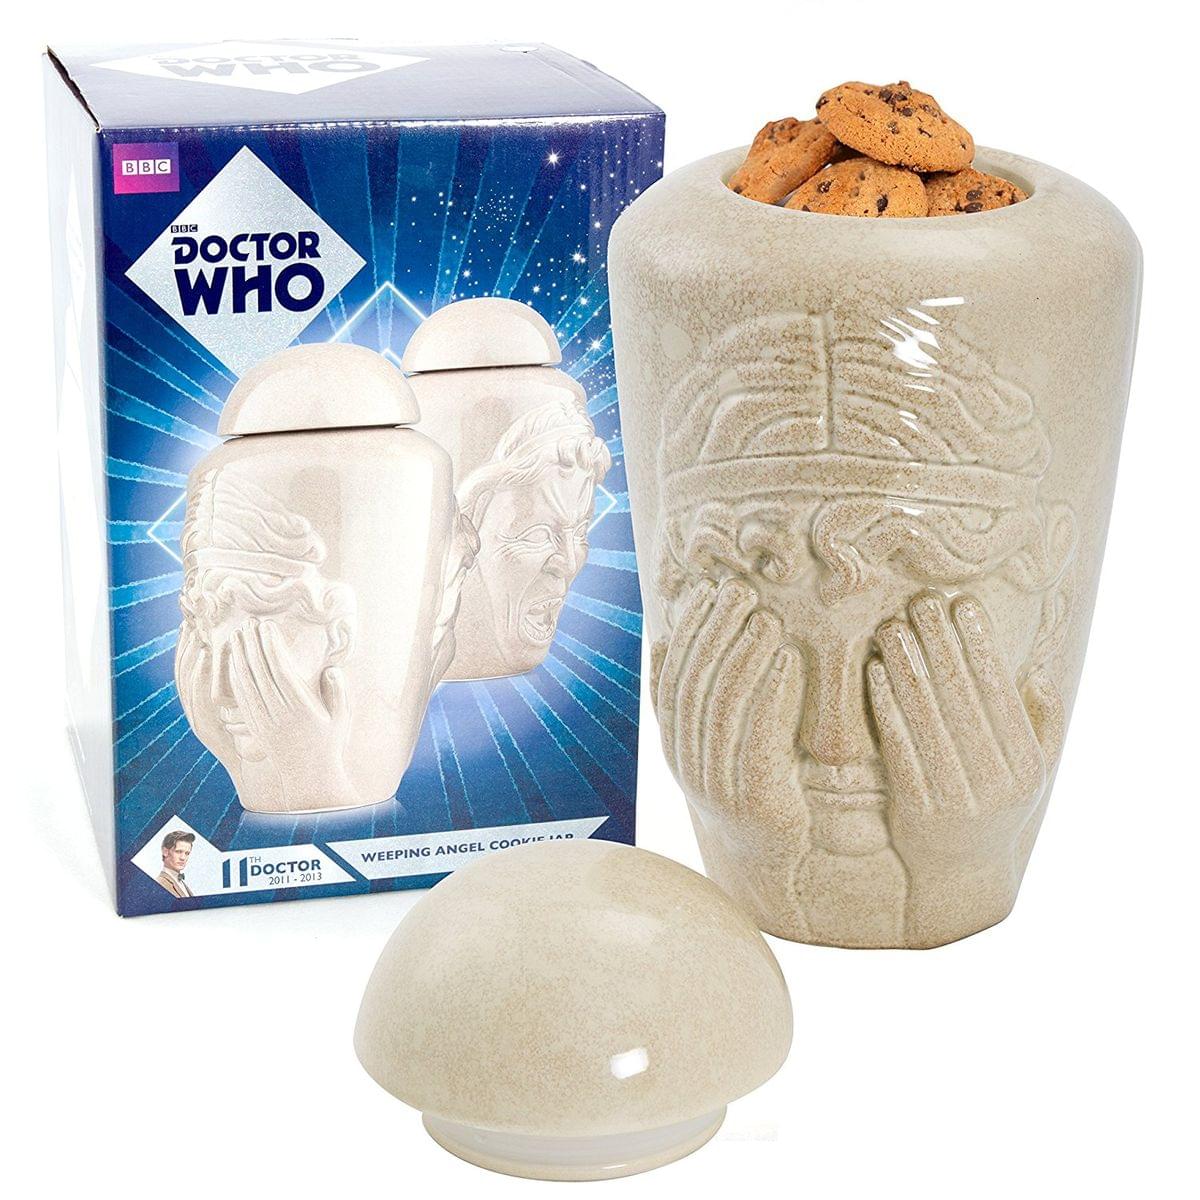 Doctor Who Weeping Angel Ceramic Cookie Jar